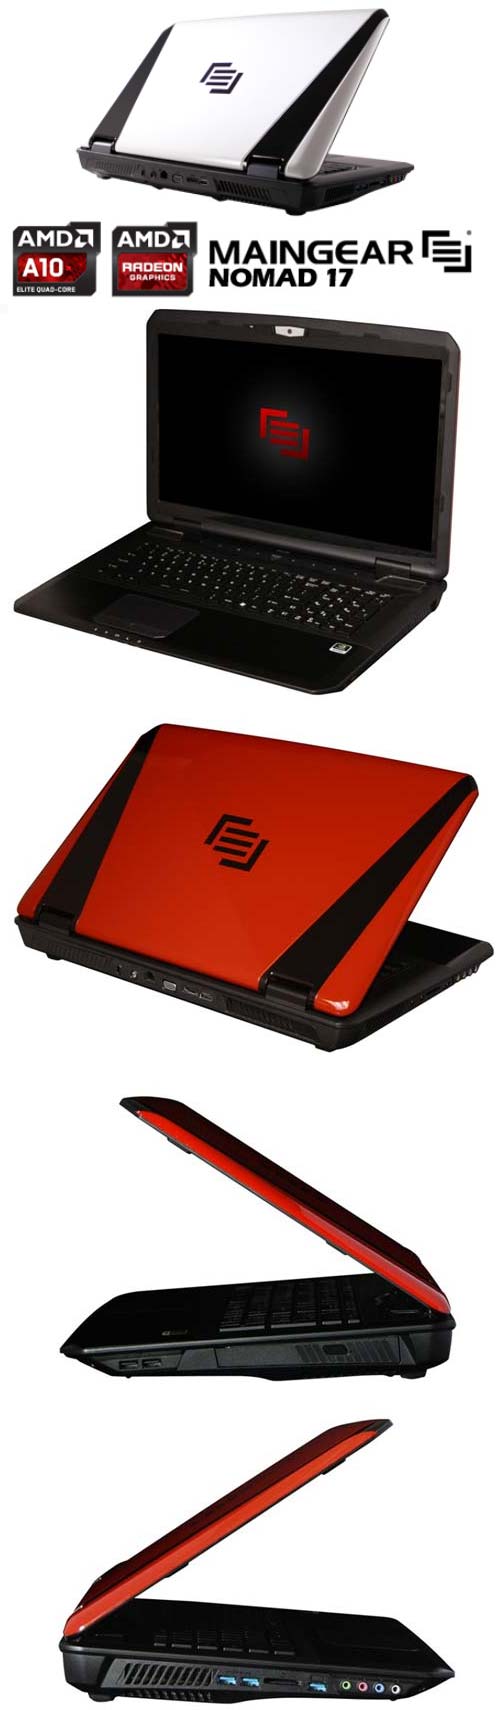 Новый и старые варианты ноутбука Maingear NOMAD 17